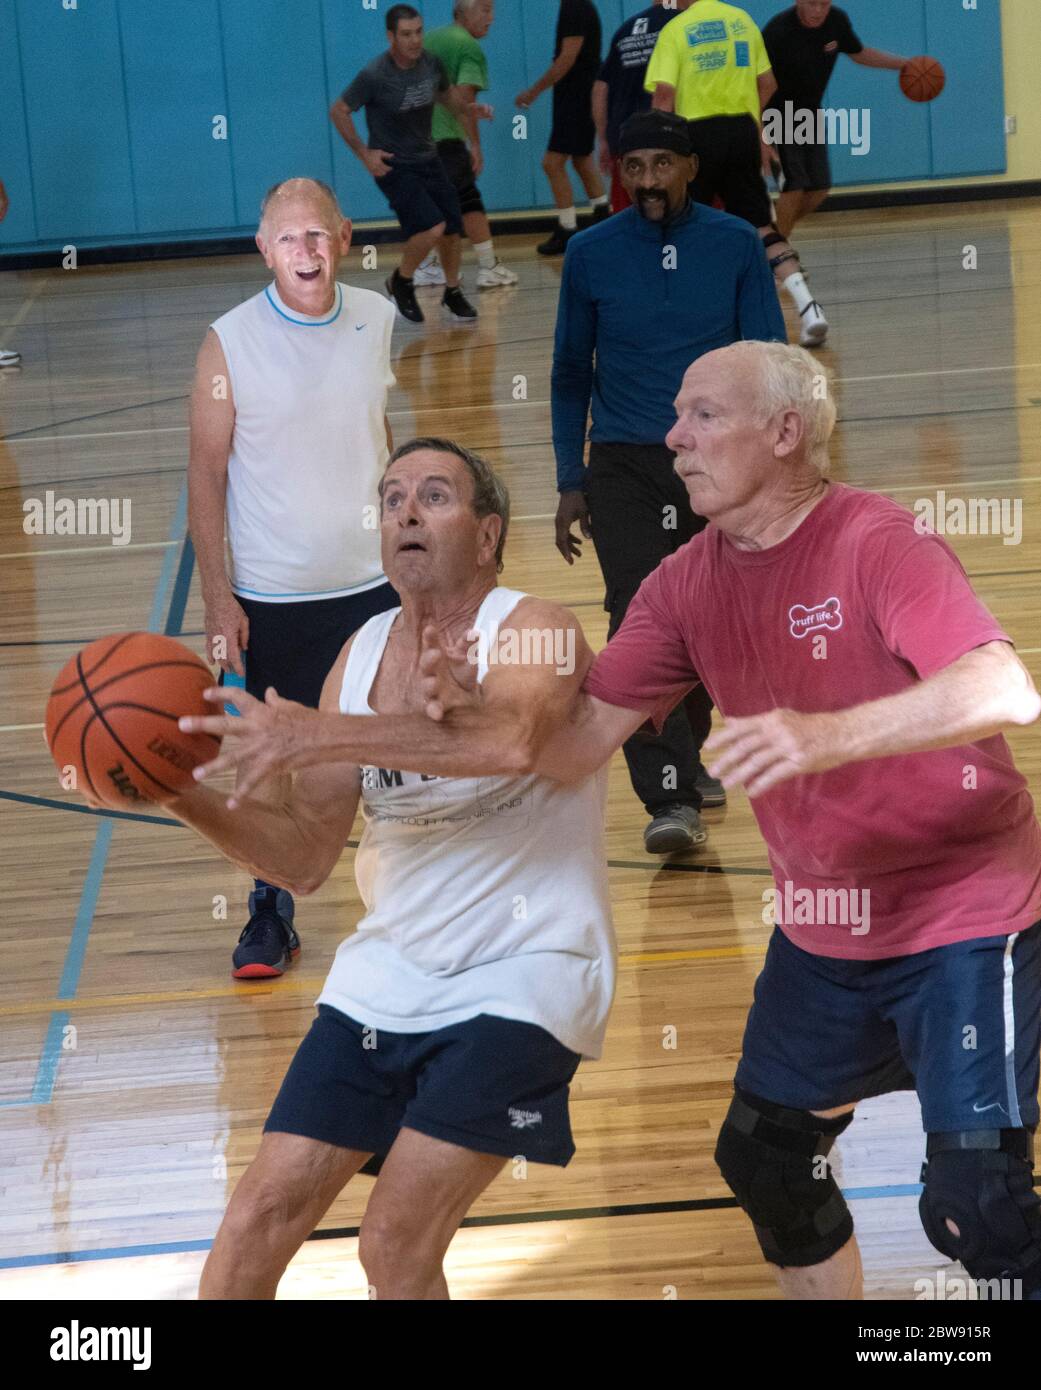 Los jugadores de baloncesto senior interbloquean los brazos mientras juegan en un centro de recreación en Englewood, Florida, EE.UU. Foto de stock